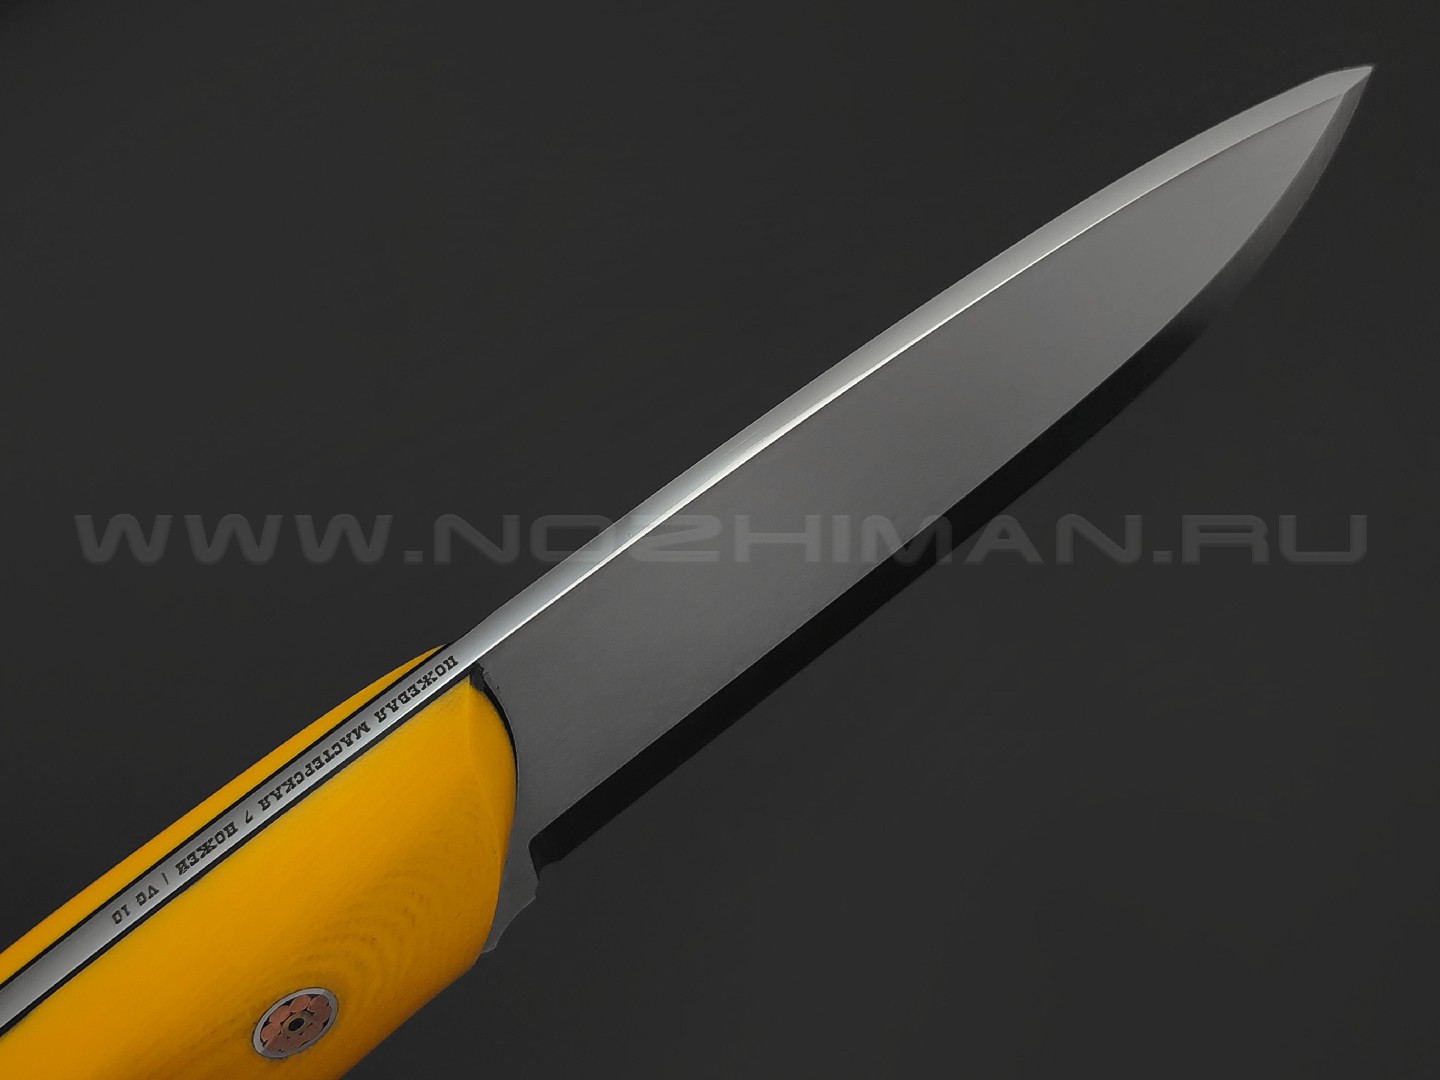 7 ножей нож Йети сталь VG-10 satin, рукоять G10 yellow